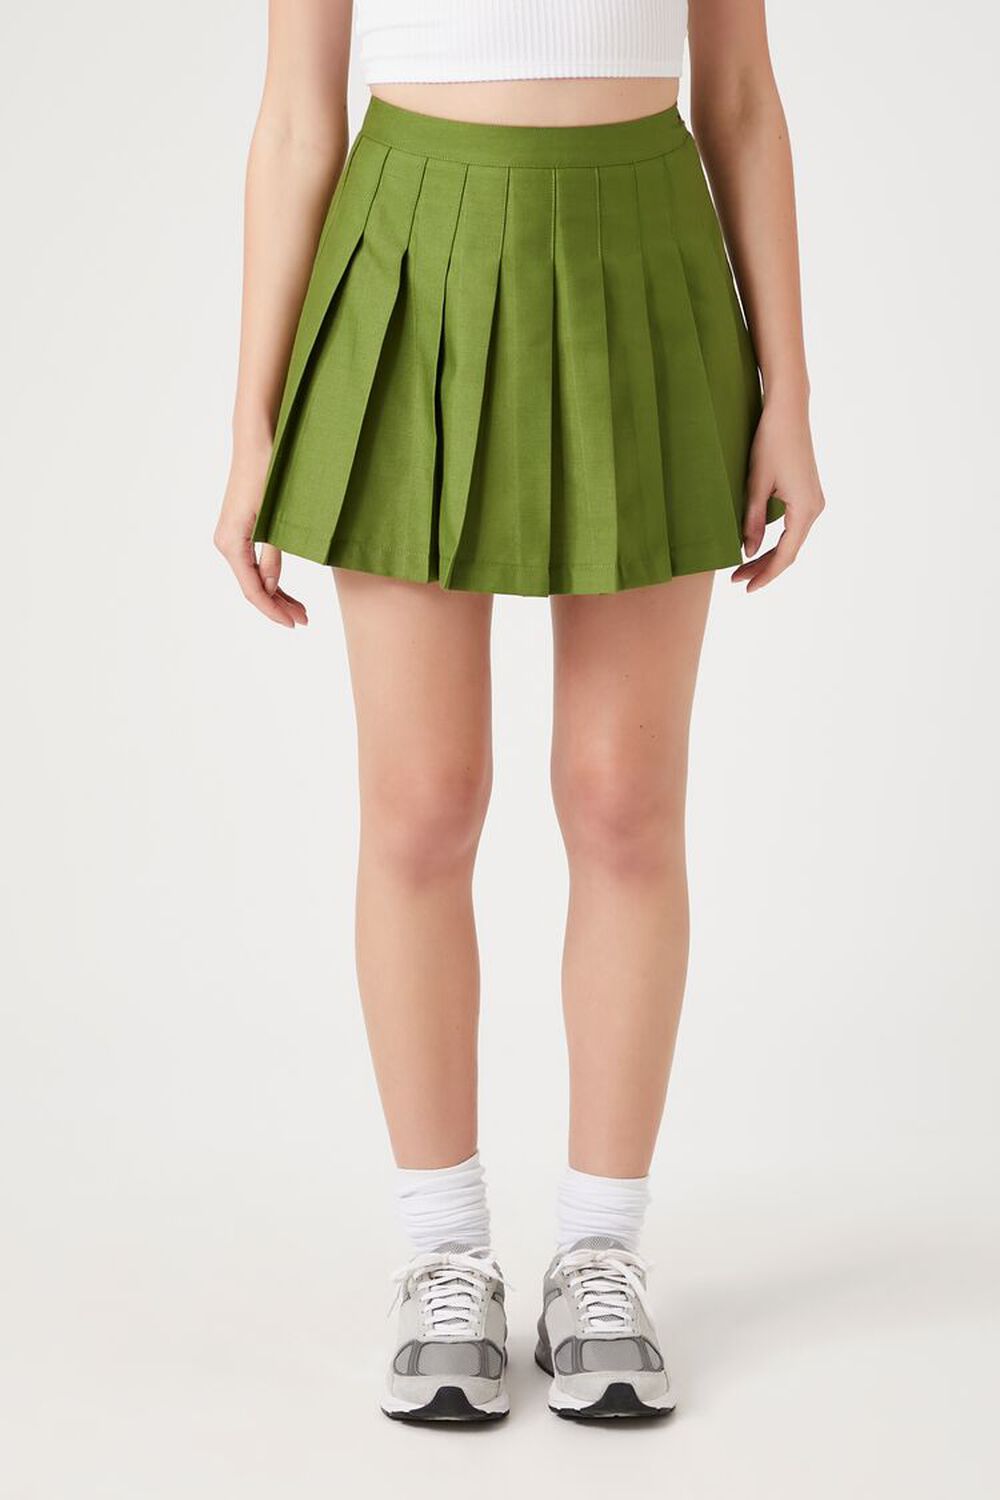 OLIVE Pleated Mini Skirt, image 2